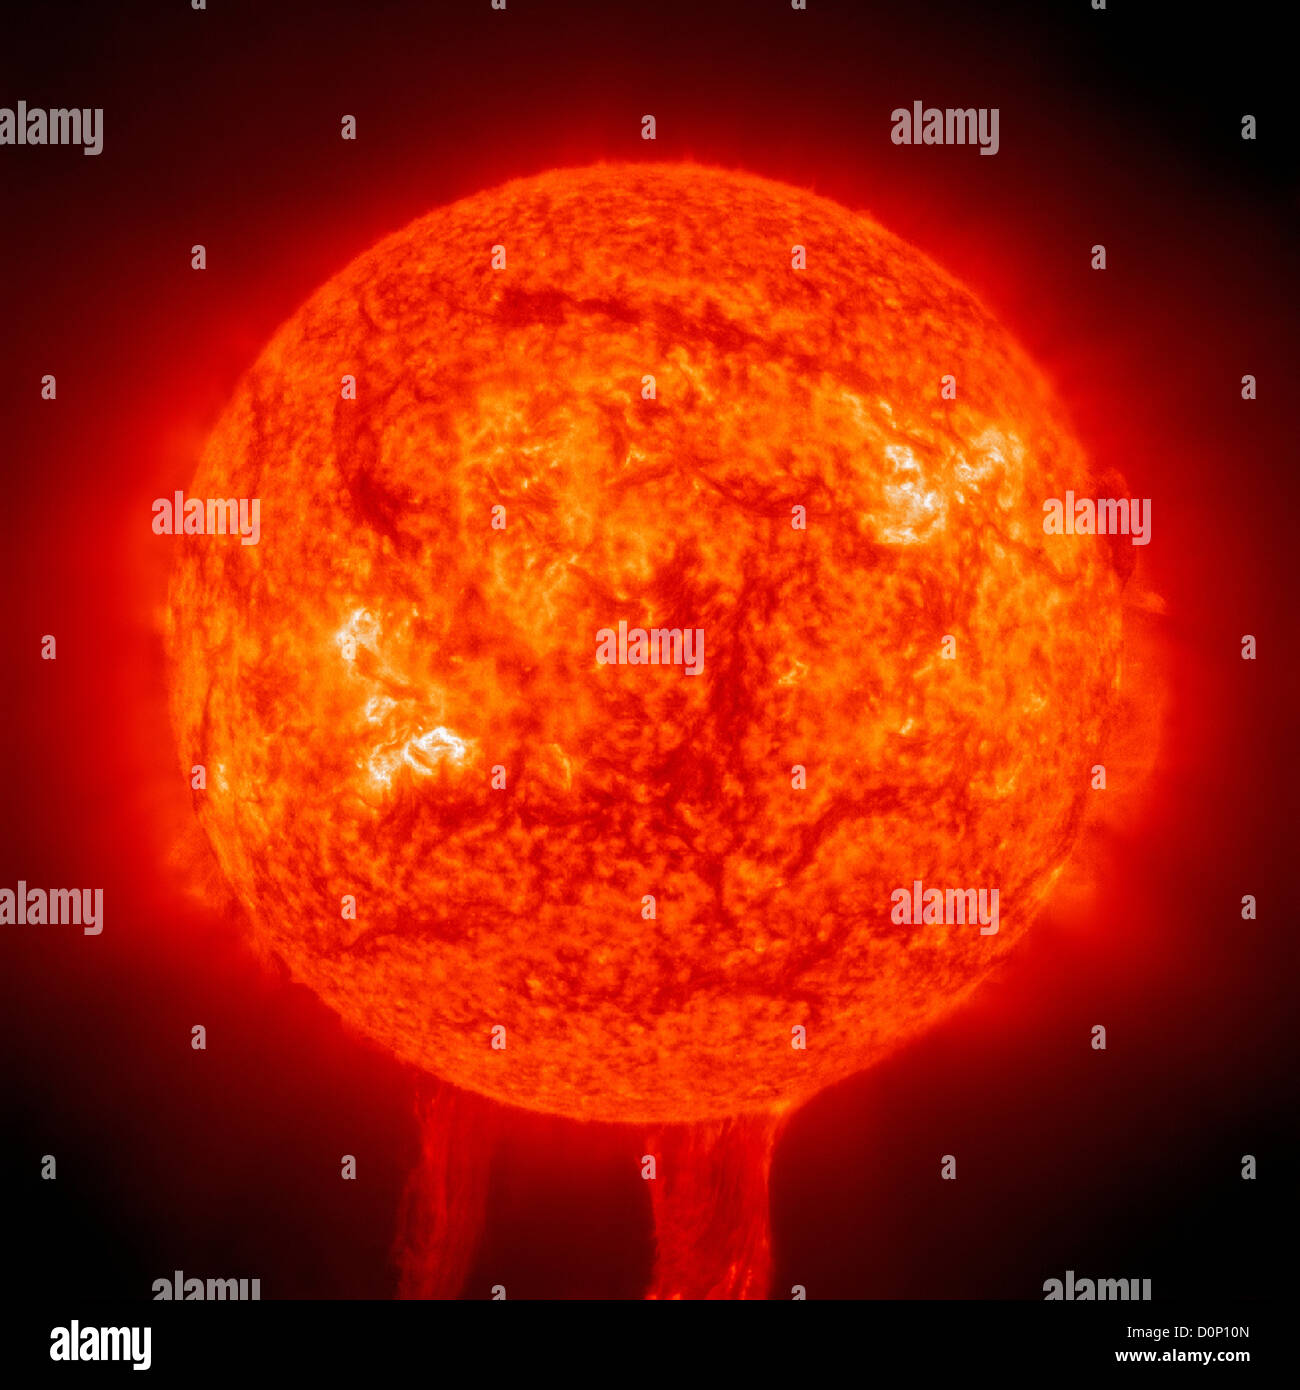 Die Solar Heliospheric Observatory (SOHO) beobachtet riesige eruptive Prominenz wölbte sich Sonne.  Es geriet es in extremen Stockfoto